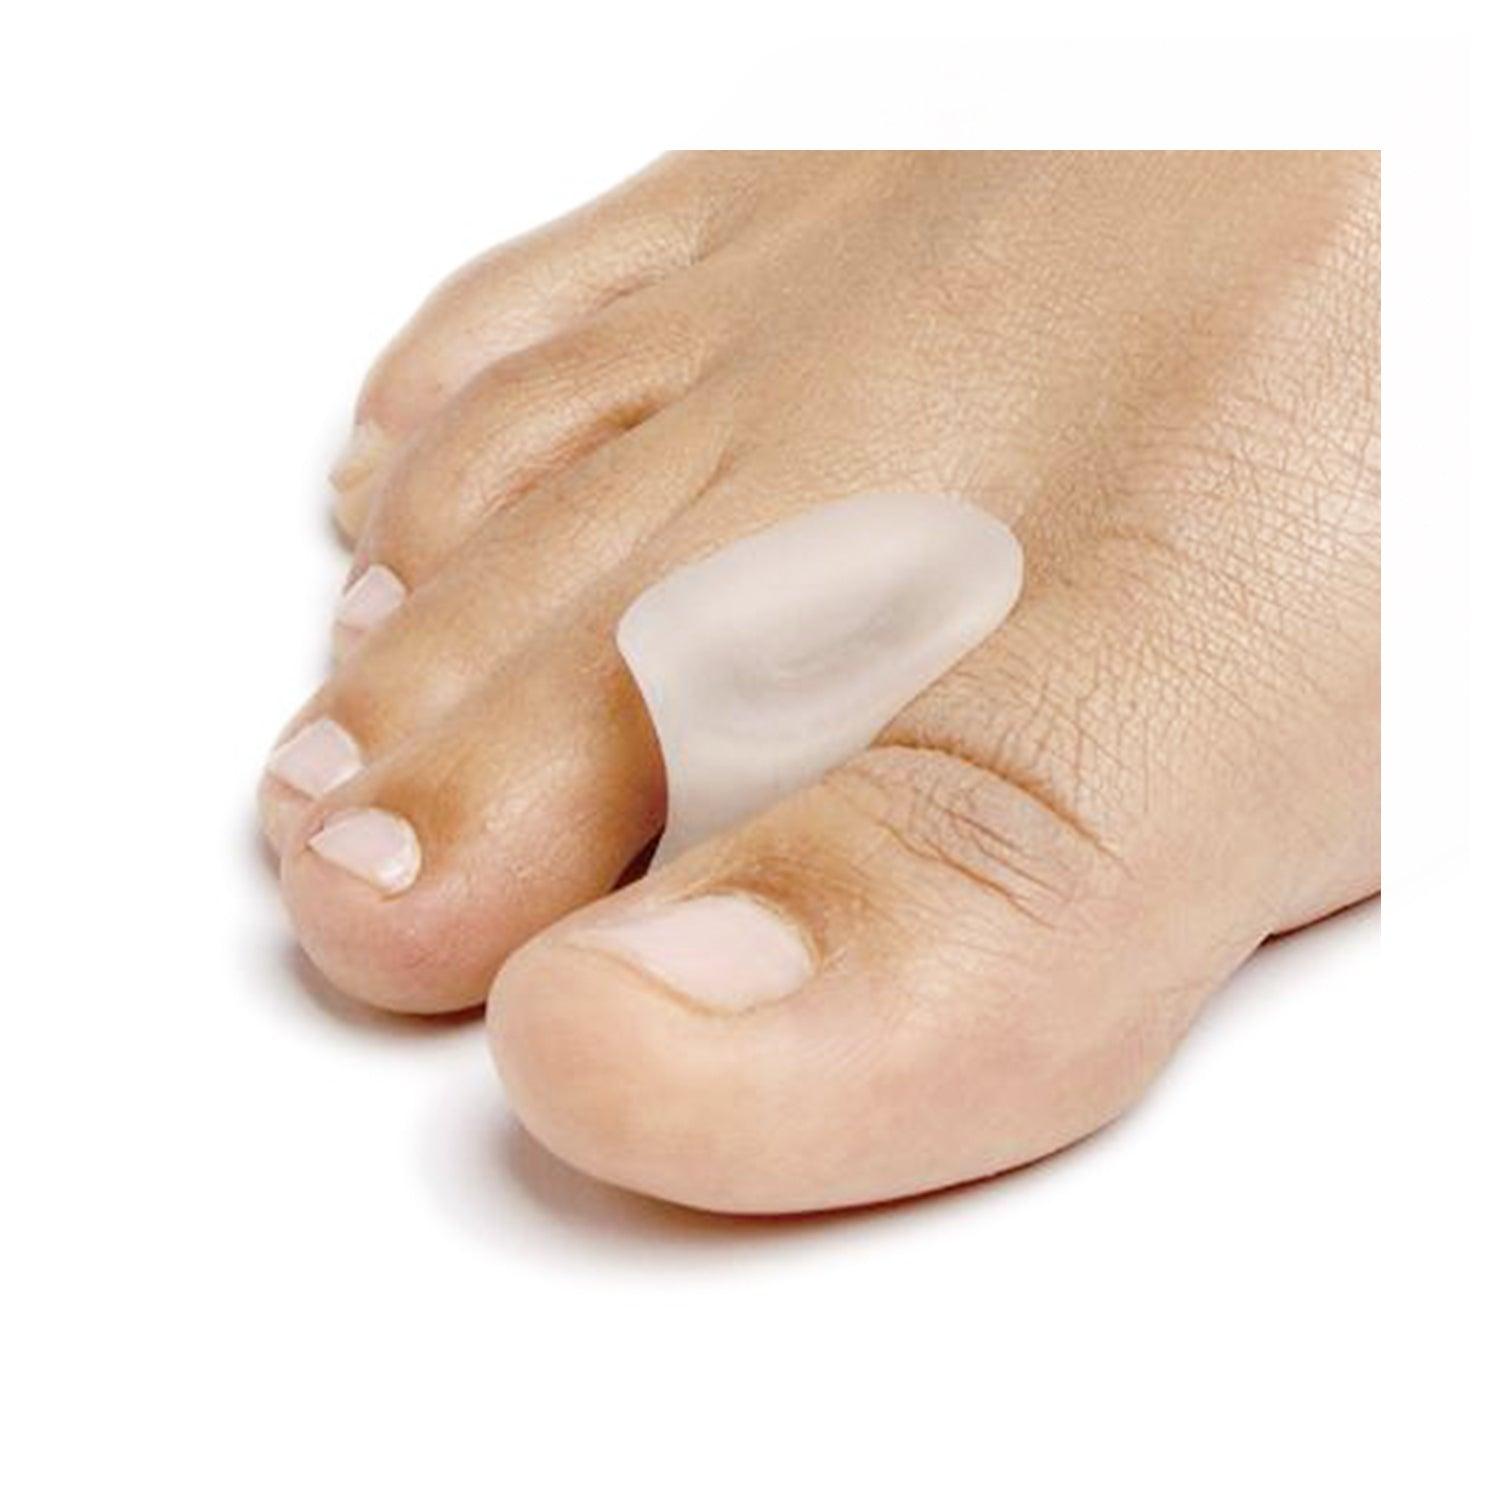 NatraCure Gel Toe Separators - Toe Spacers - 12 Pack - Medium : :  Beauty